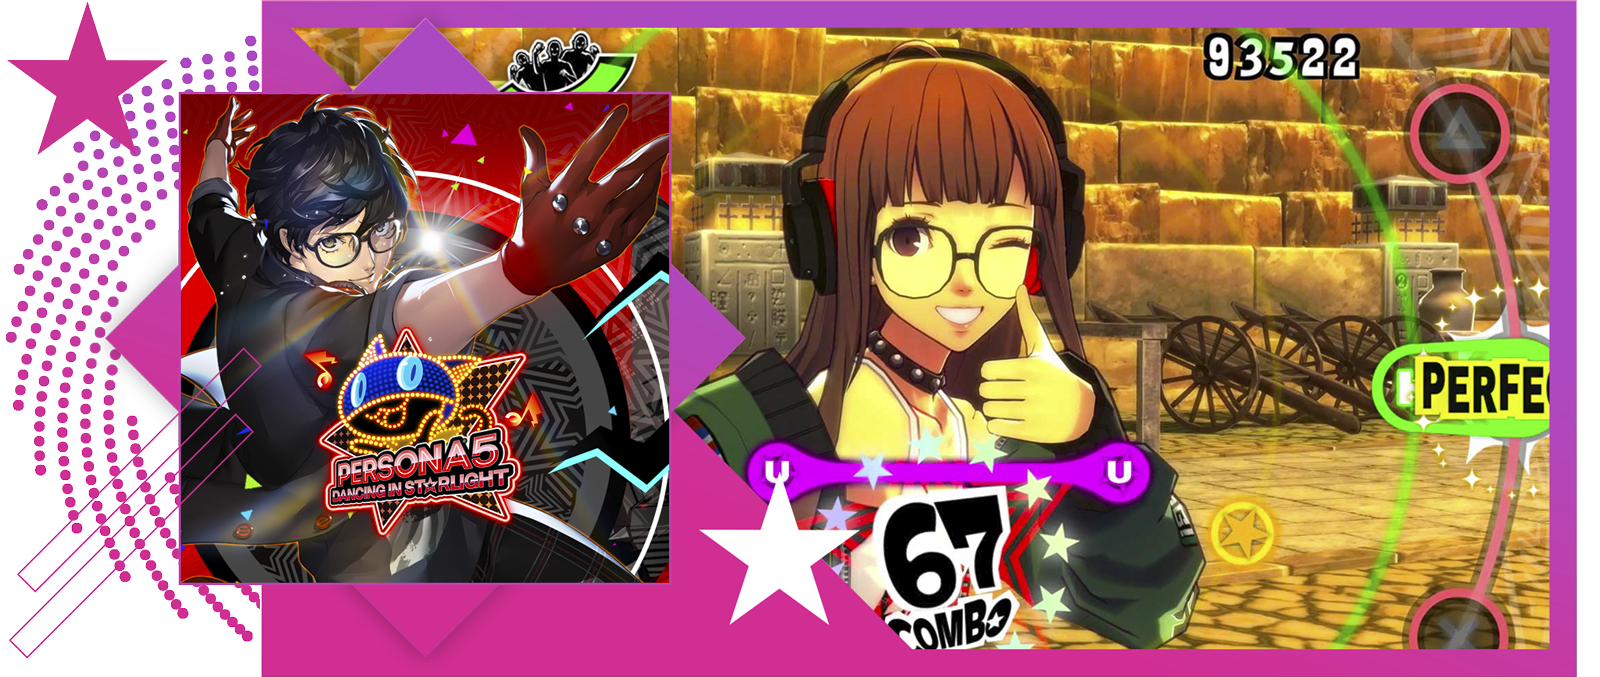 I migliori giochi musicali - Immagine in evidenza che include immagine principale e immagine del sistema di gioco di Persona 5: Dancing in Starlight.